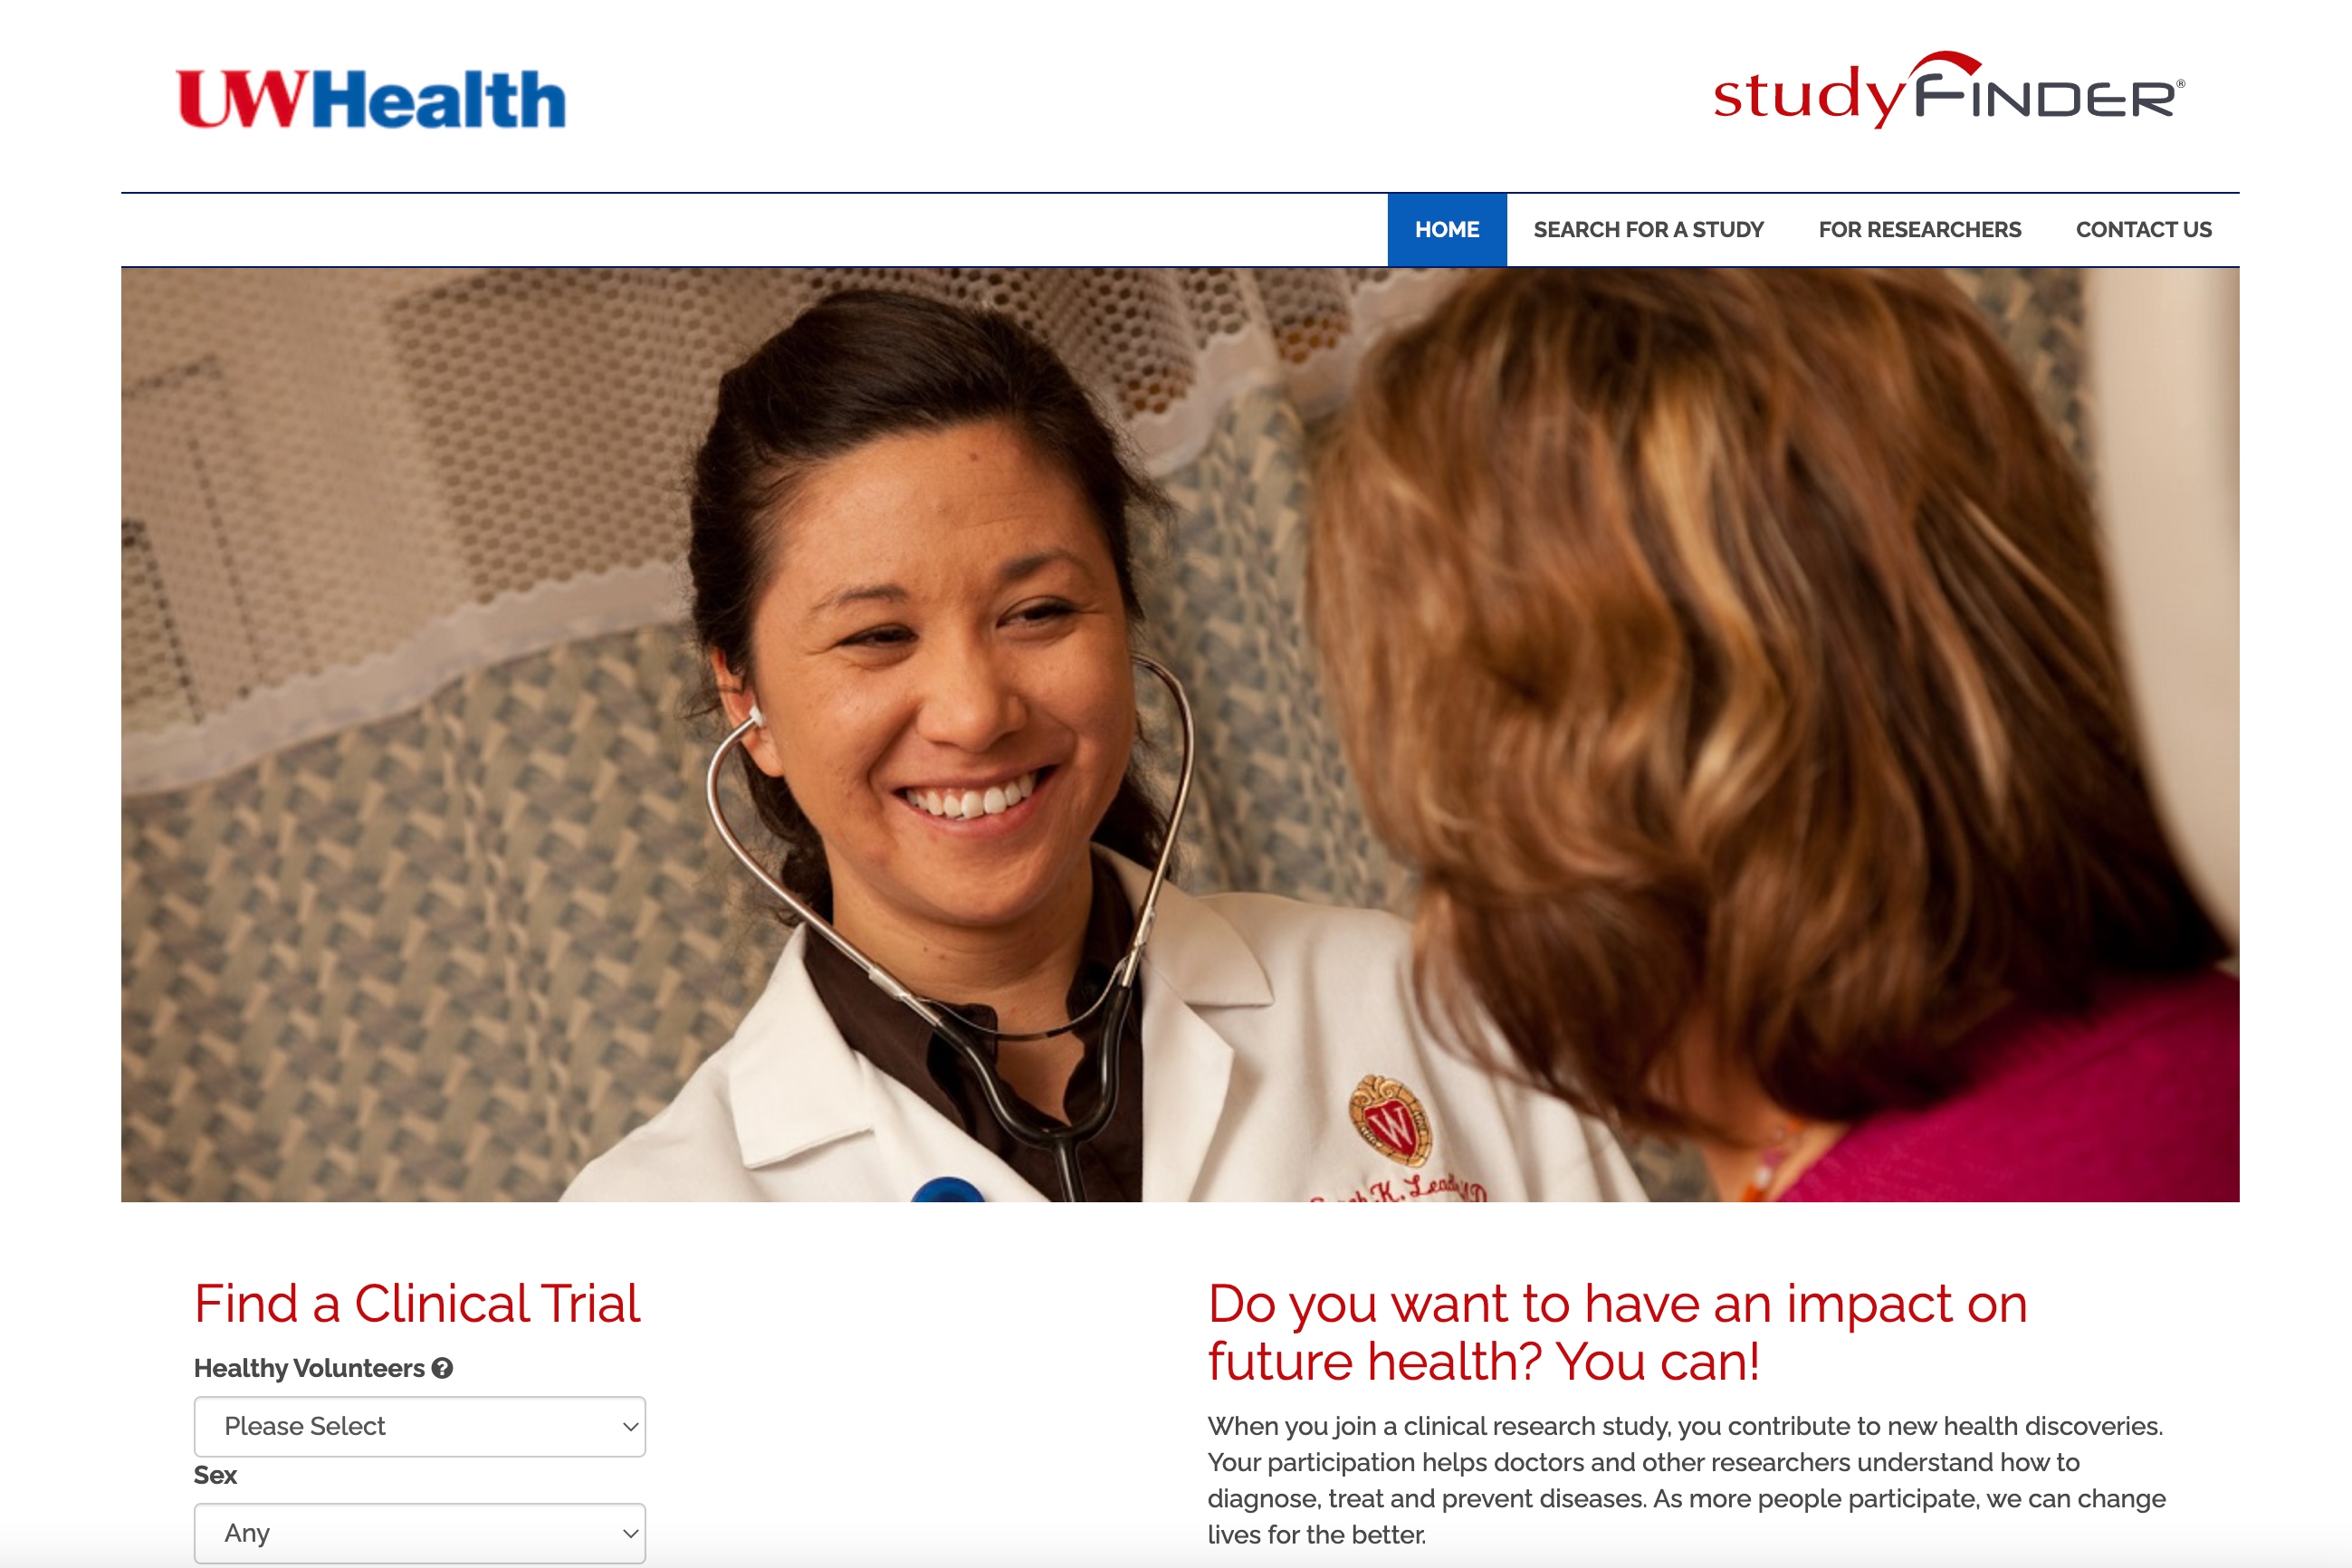 University of Wisconsin (UW Health) StudyFinder